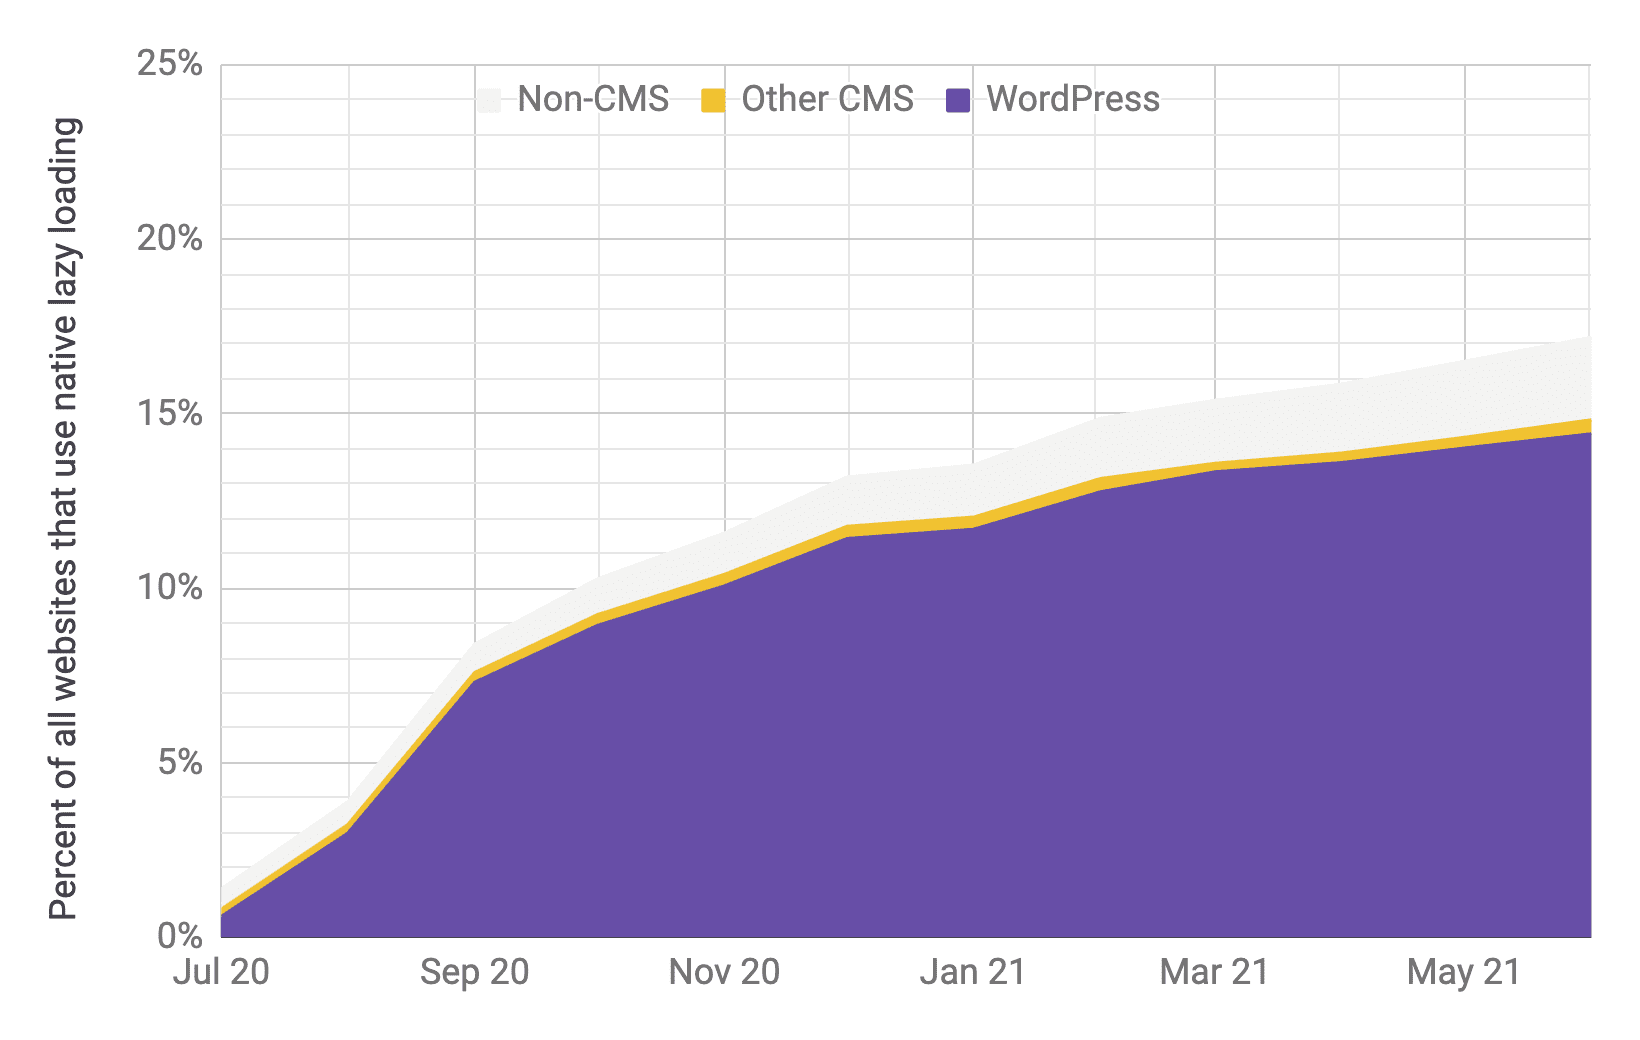 Gráfico de séries temporais sobre a adoção do carregamento lento com o WordPress sendo o principal player em comparação com outros CMSs e não CMSs, com proporções semelhantes ao gráfico anterior. A adoção total aumentou rapidamente de 1% para 17% de julho de 2020 a junho de 2021.